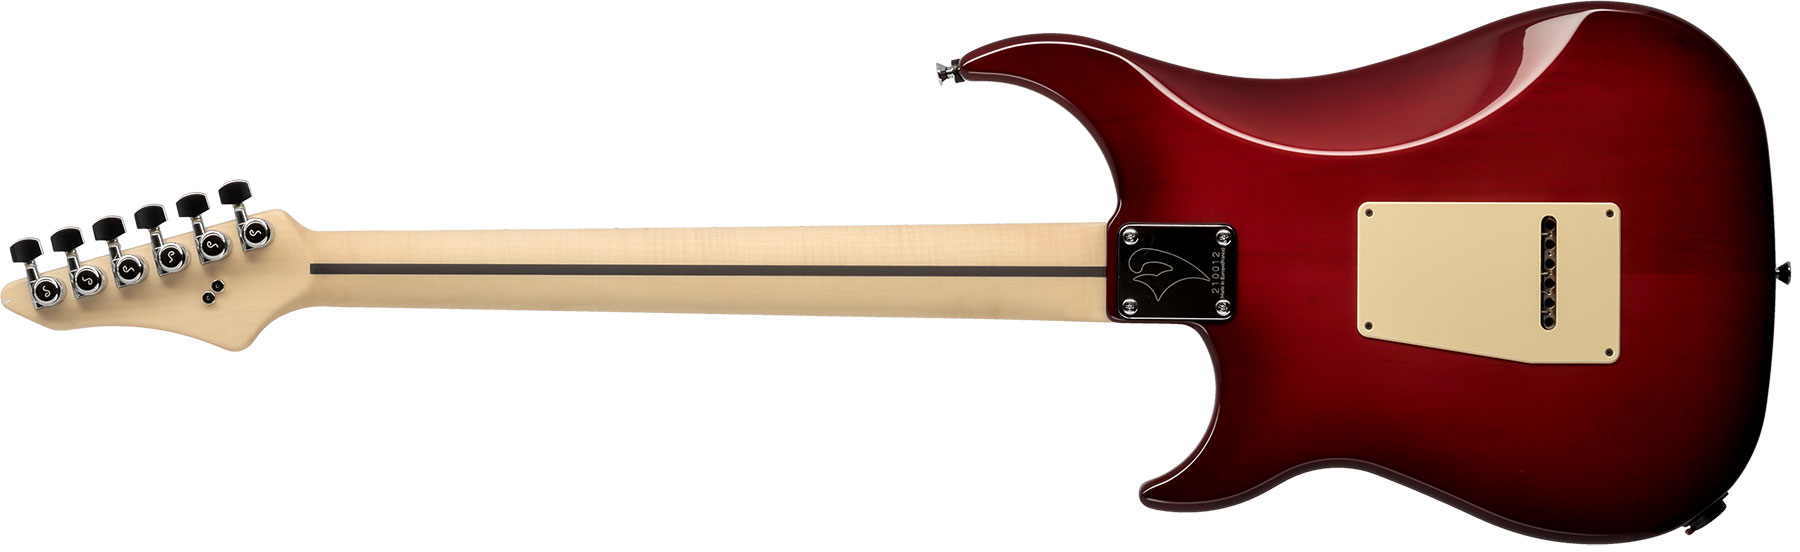 Vigier Excalibur Supraa Hsh Trem Mn - Clear Red - Elektrische gitaar in Str-vorm - Variation 1